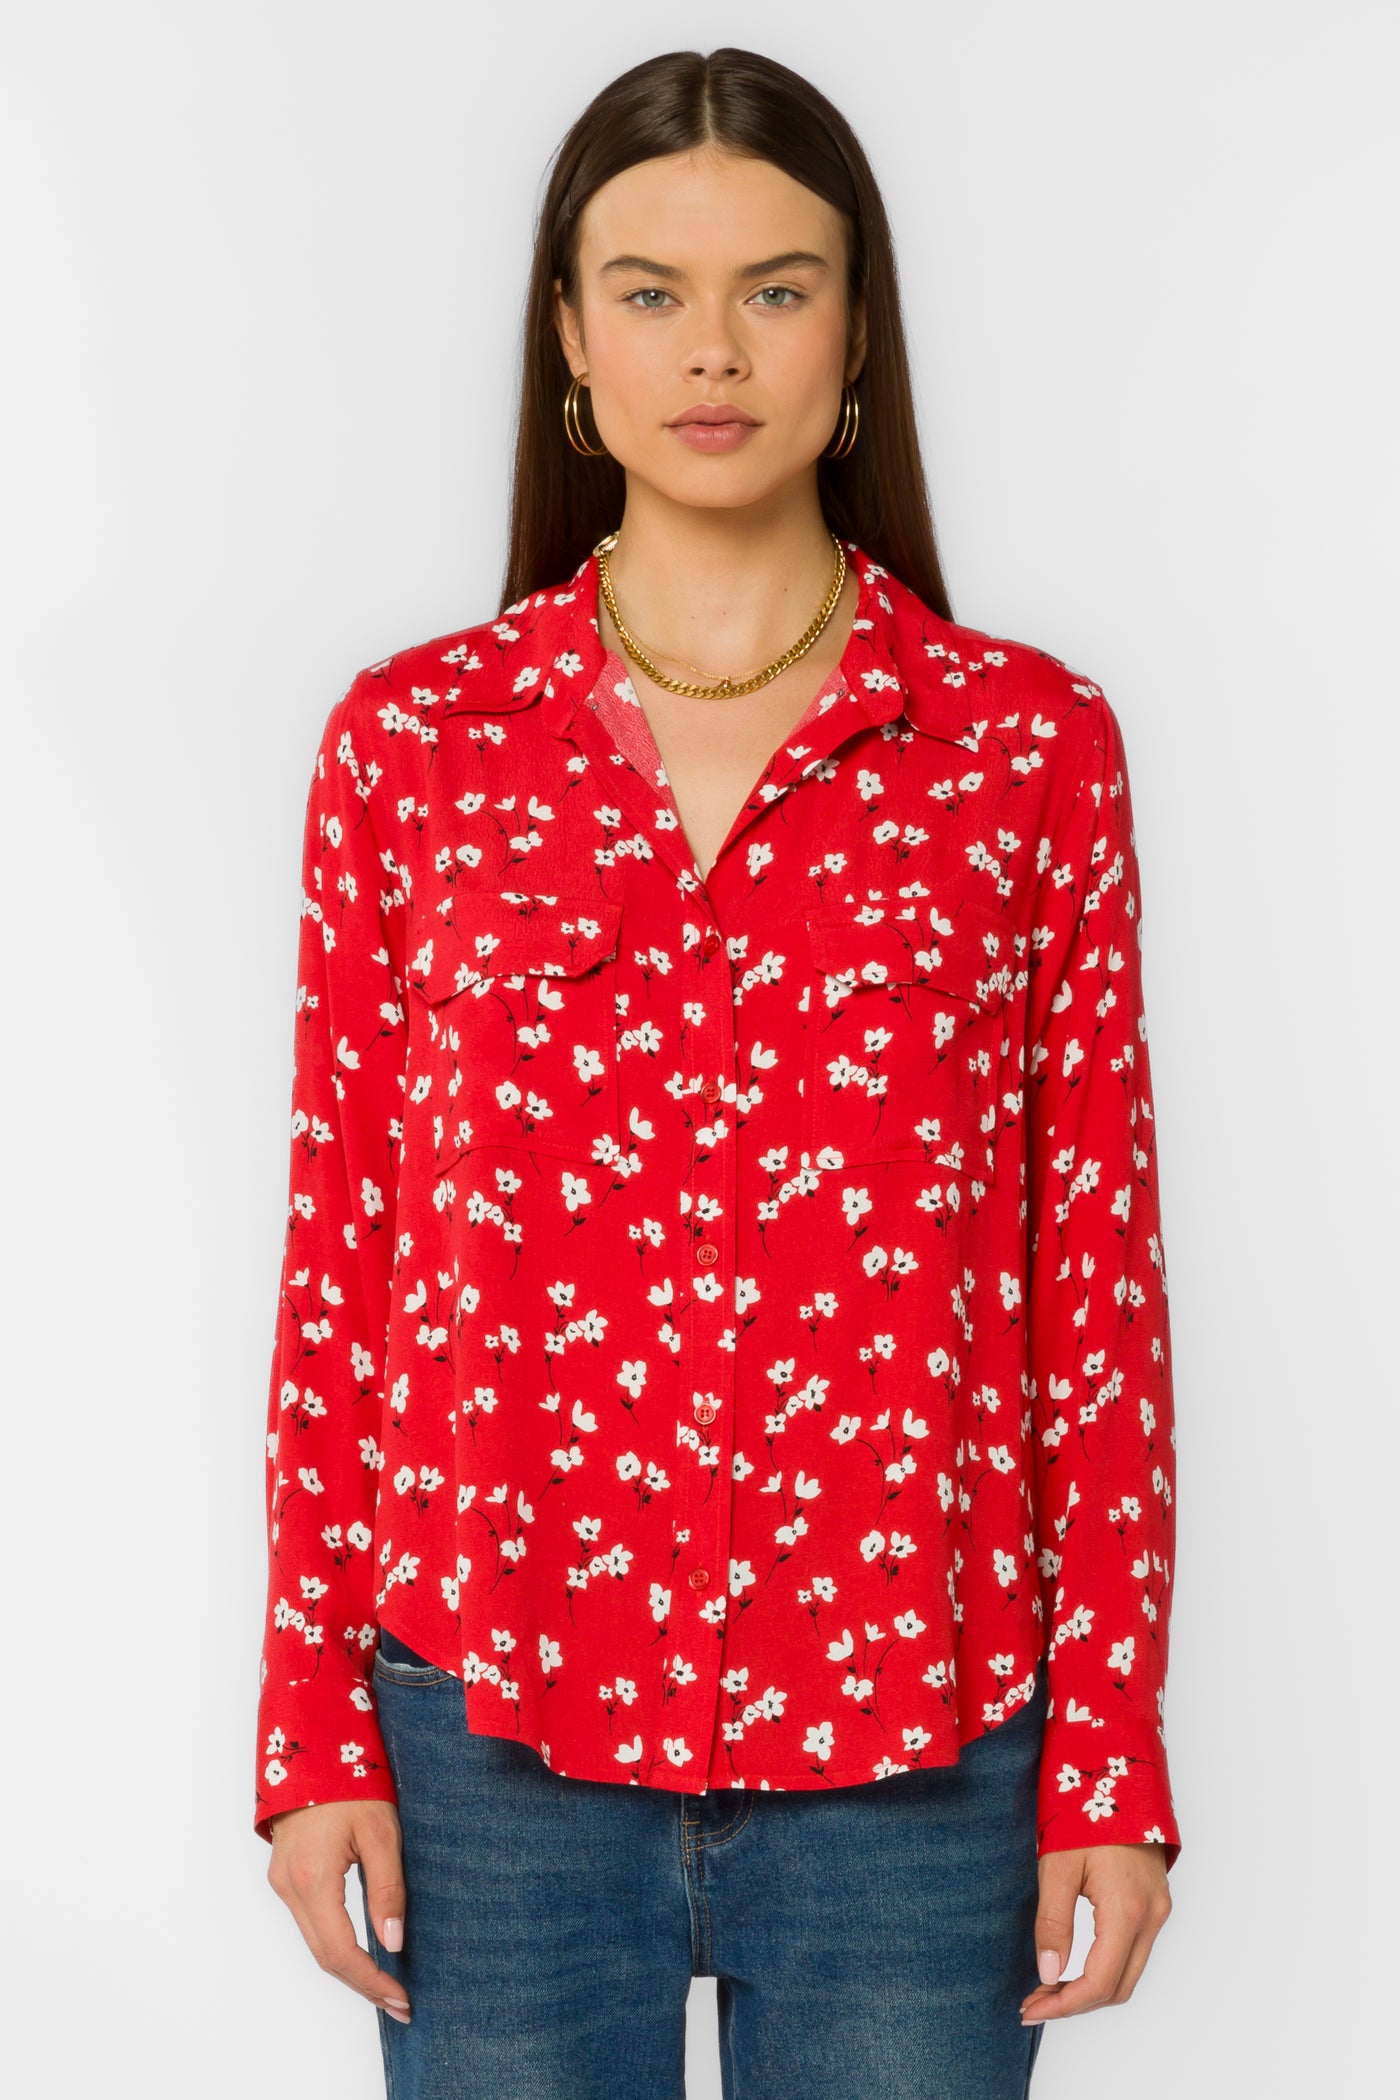 Kacia Red Poppy Shirt - Tops - Velvet Heart Clothing